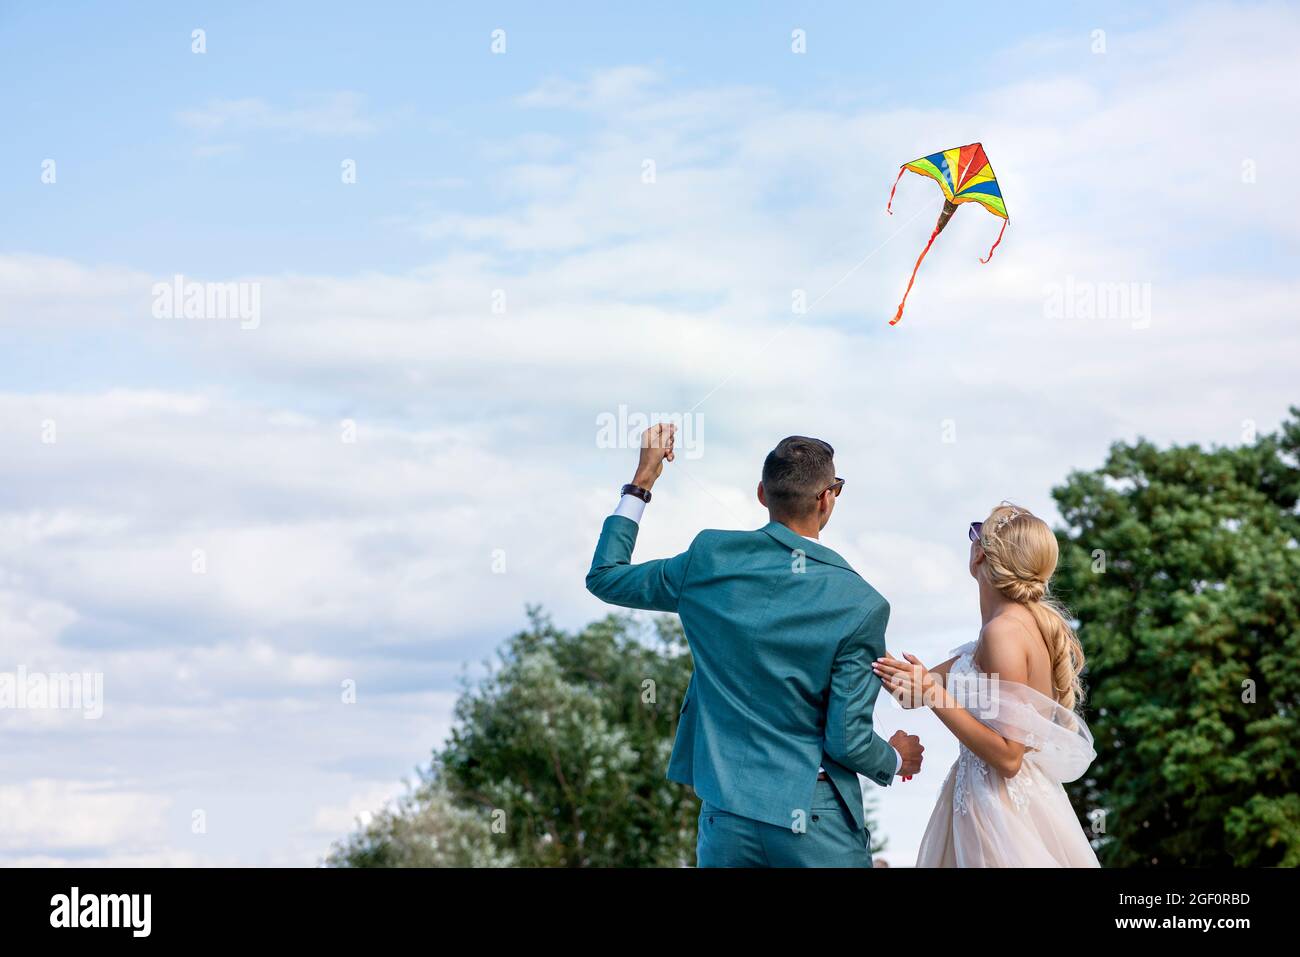 Una cometa en una boda. Una pareja de bodas lanza una cometa en el cielo. La novia y el novio vuelan una cometa juntos en su día de la boda. Foto de stock